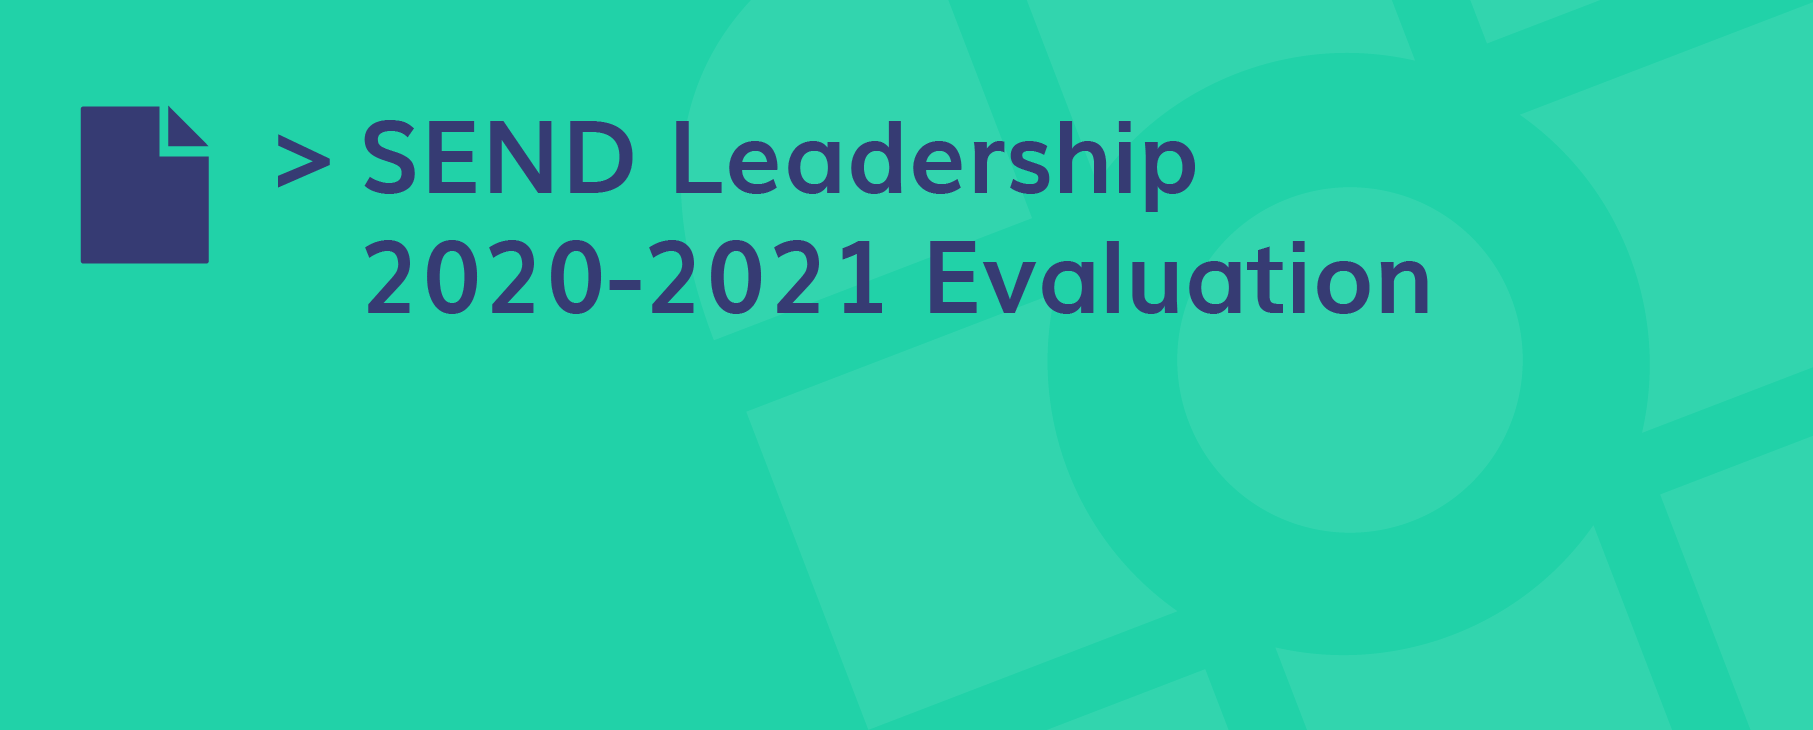 Send Leadership Evaluation 01 01